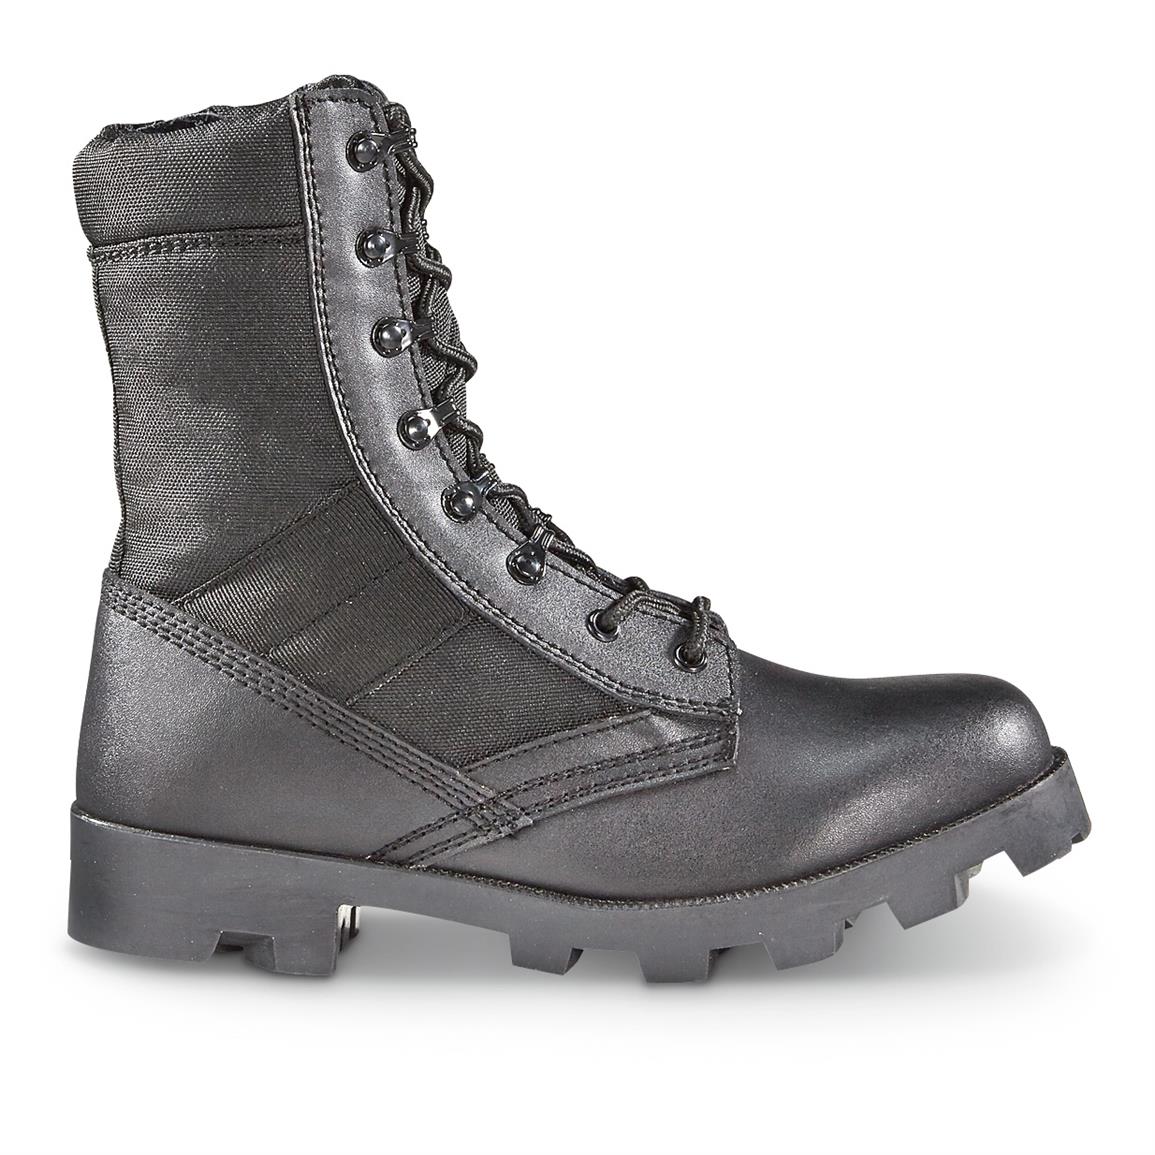 Blackrock Men's Side Zip Jungle Boots - 662987, Combat & Tactical Boots